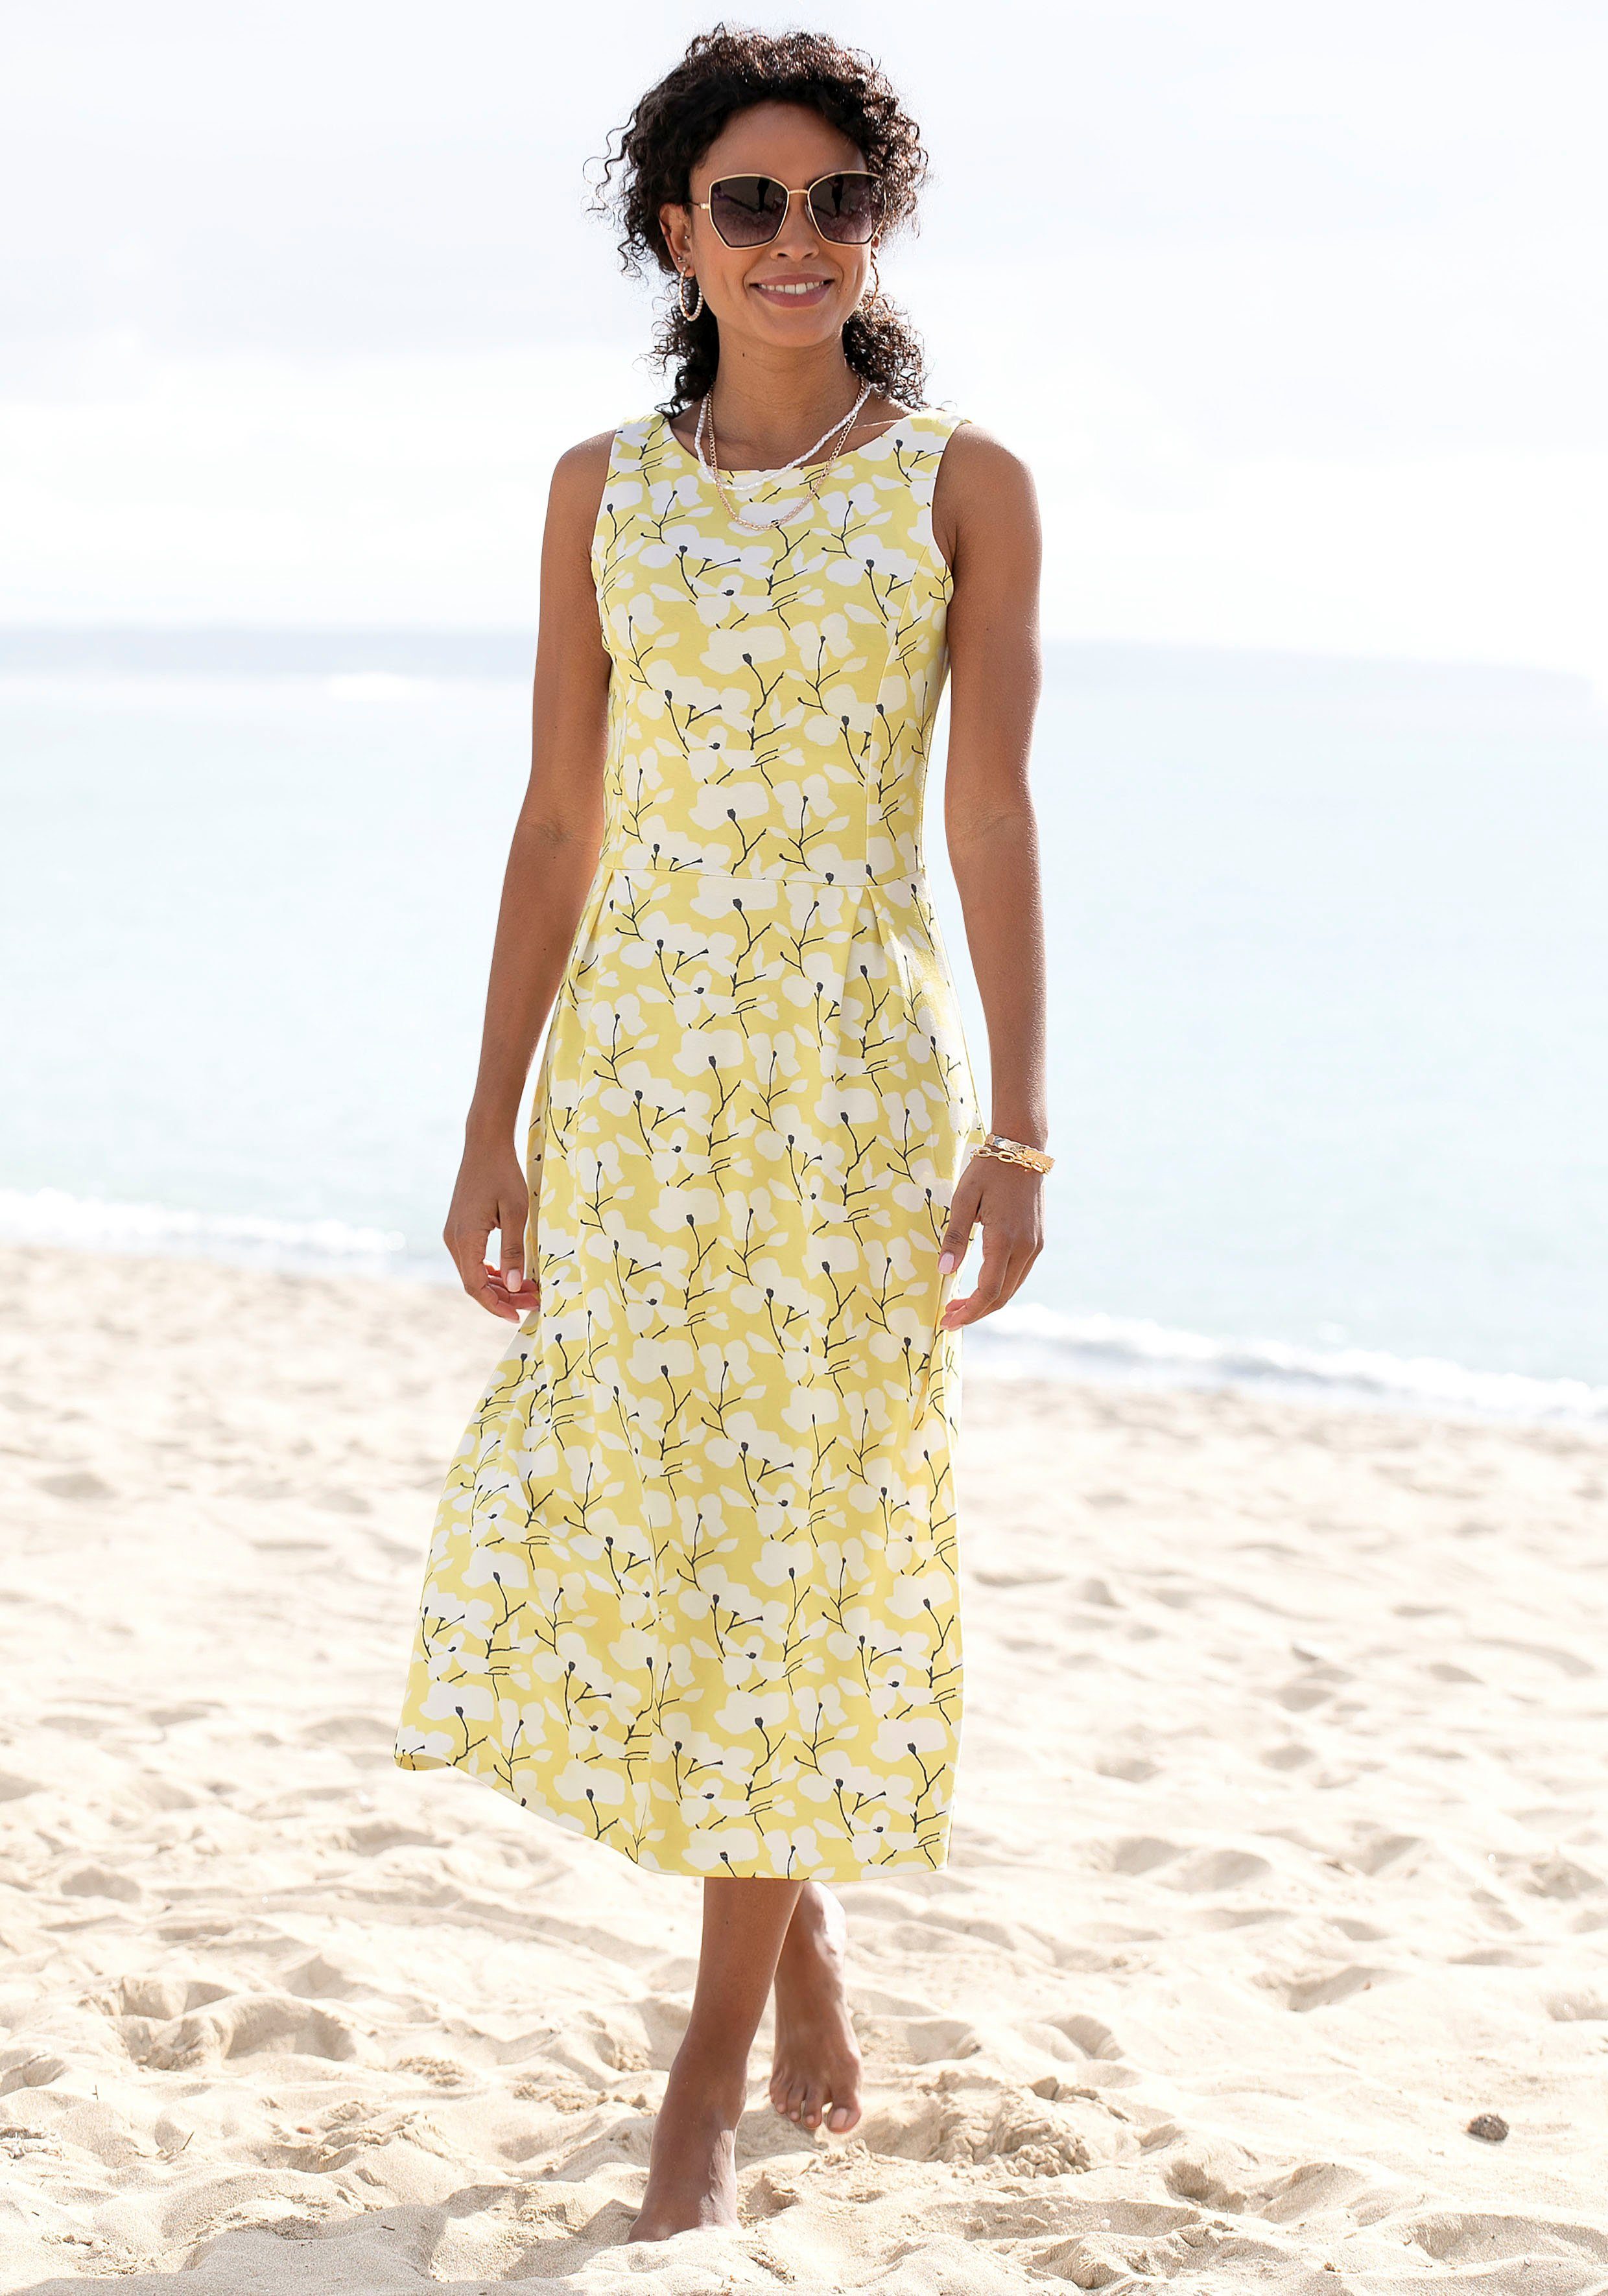 Auslauf Beachtime Sommerkleid gelb-creme-bedruckt Strandmode, Strandbekleidung mit Blumendruck